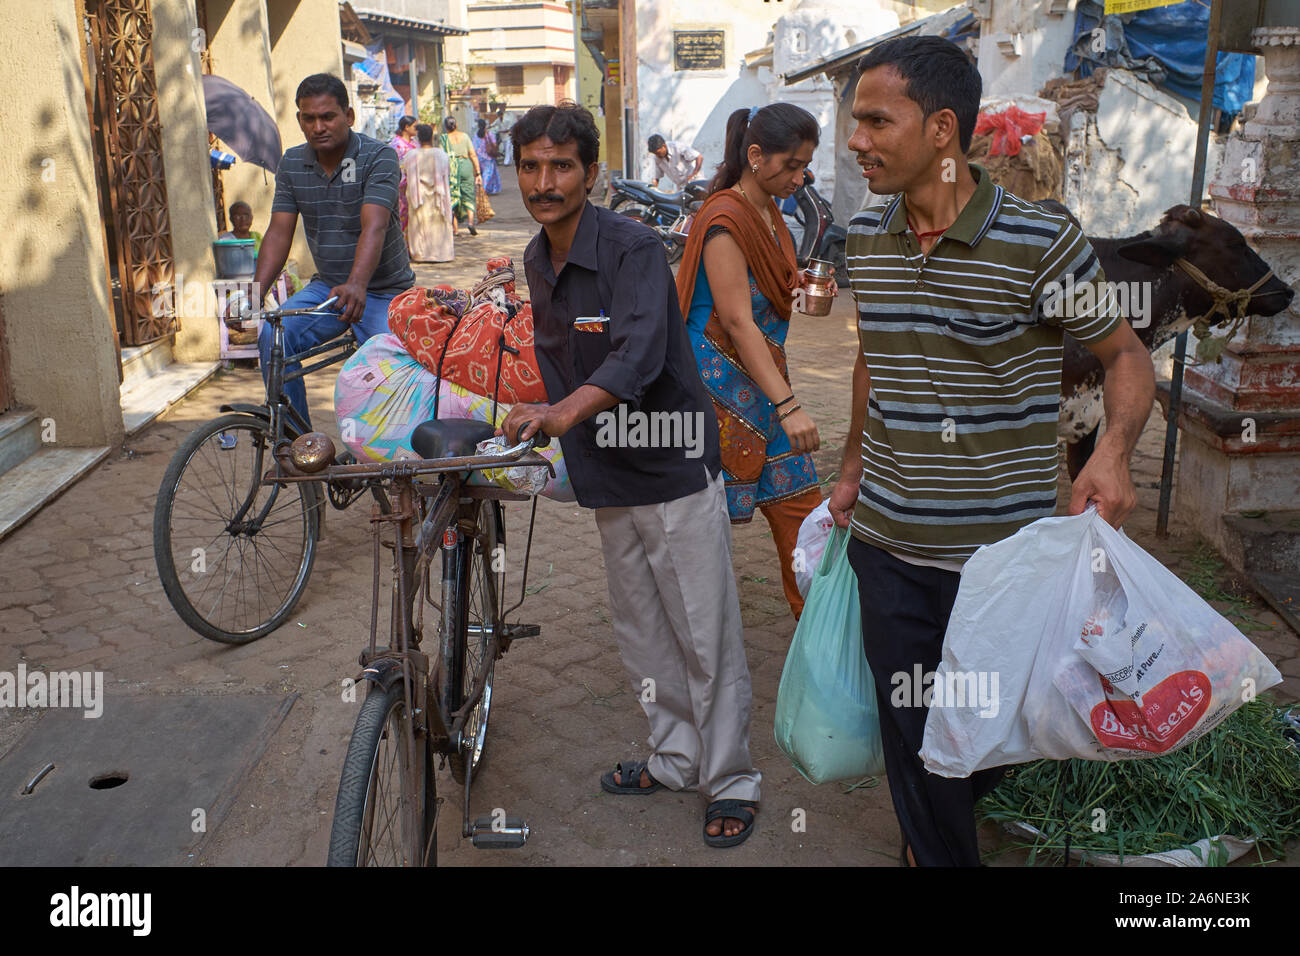 Scena di strada in Mumbai, India, occupato pedoni, ciclisti e una mucca condividere lo spazio stretto in una corsia Foto Stock